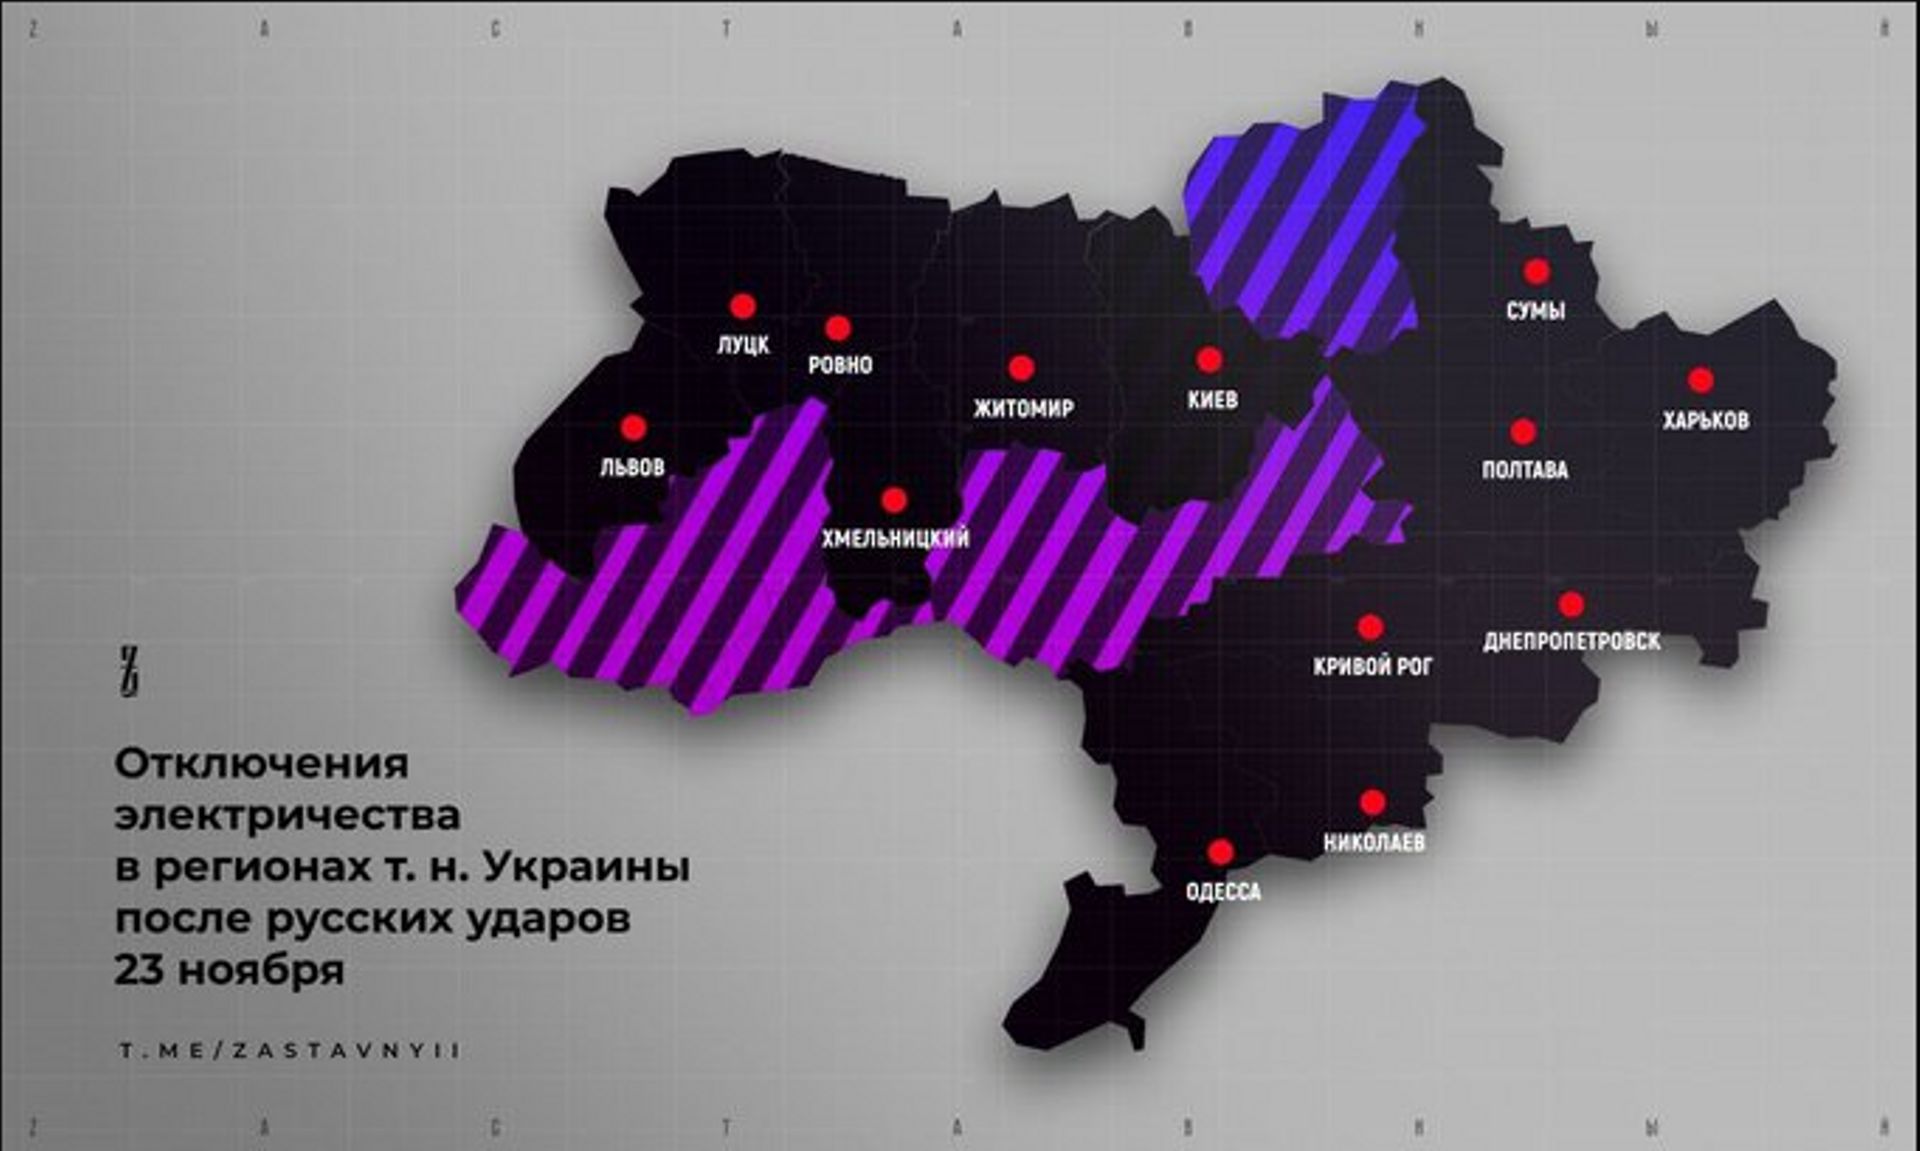 "Les pannes de courant dans certaines régions de l’Ukraine après les frappes russes du 23 novembre 2022".